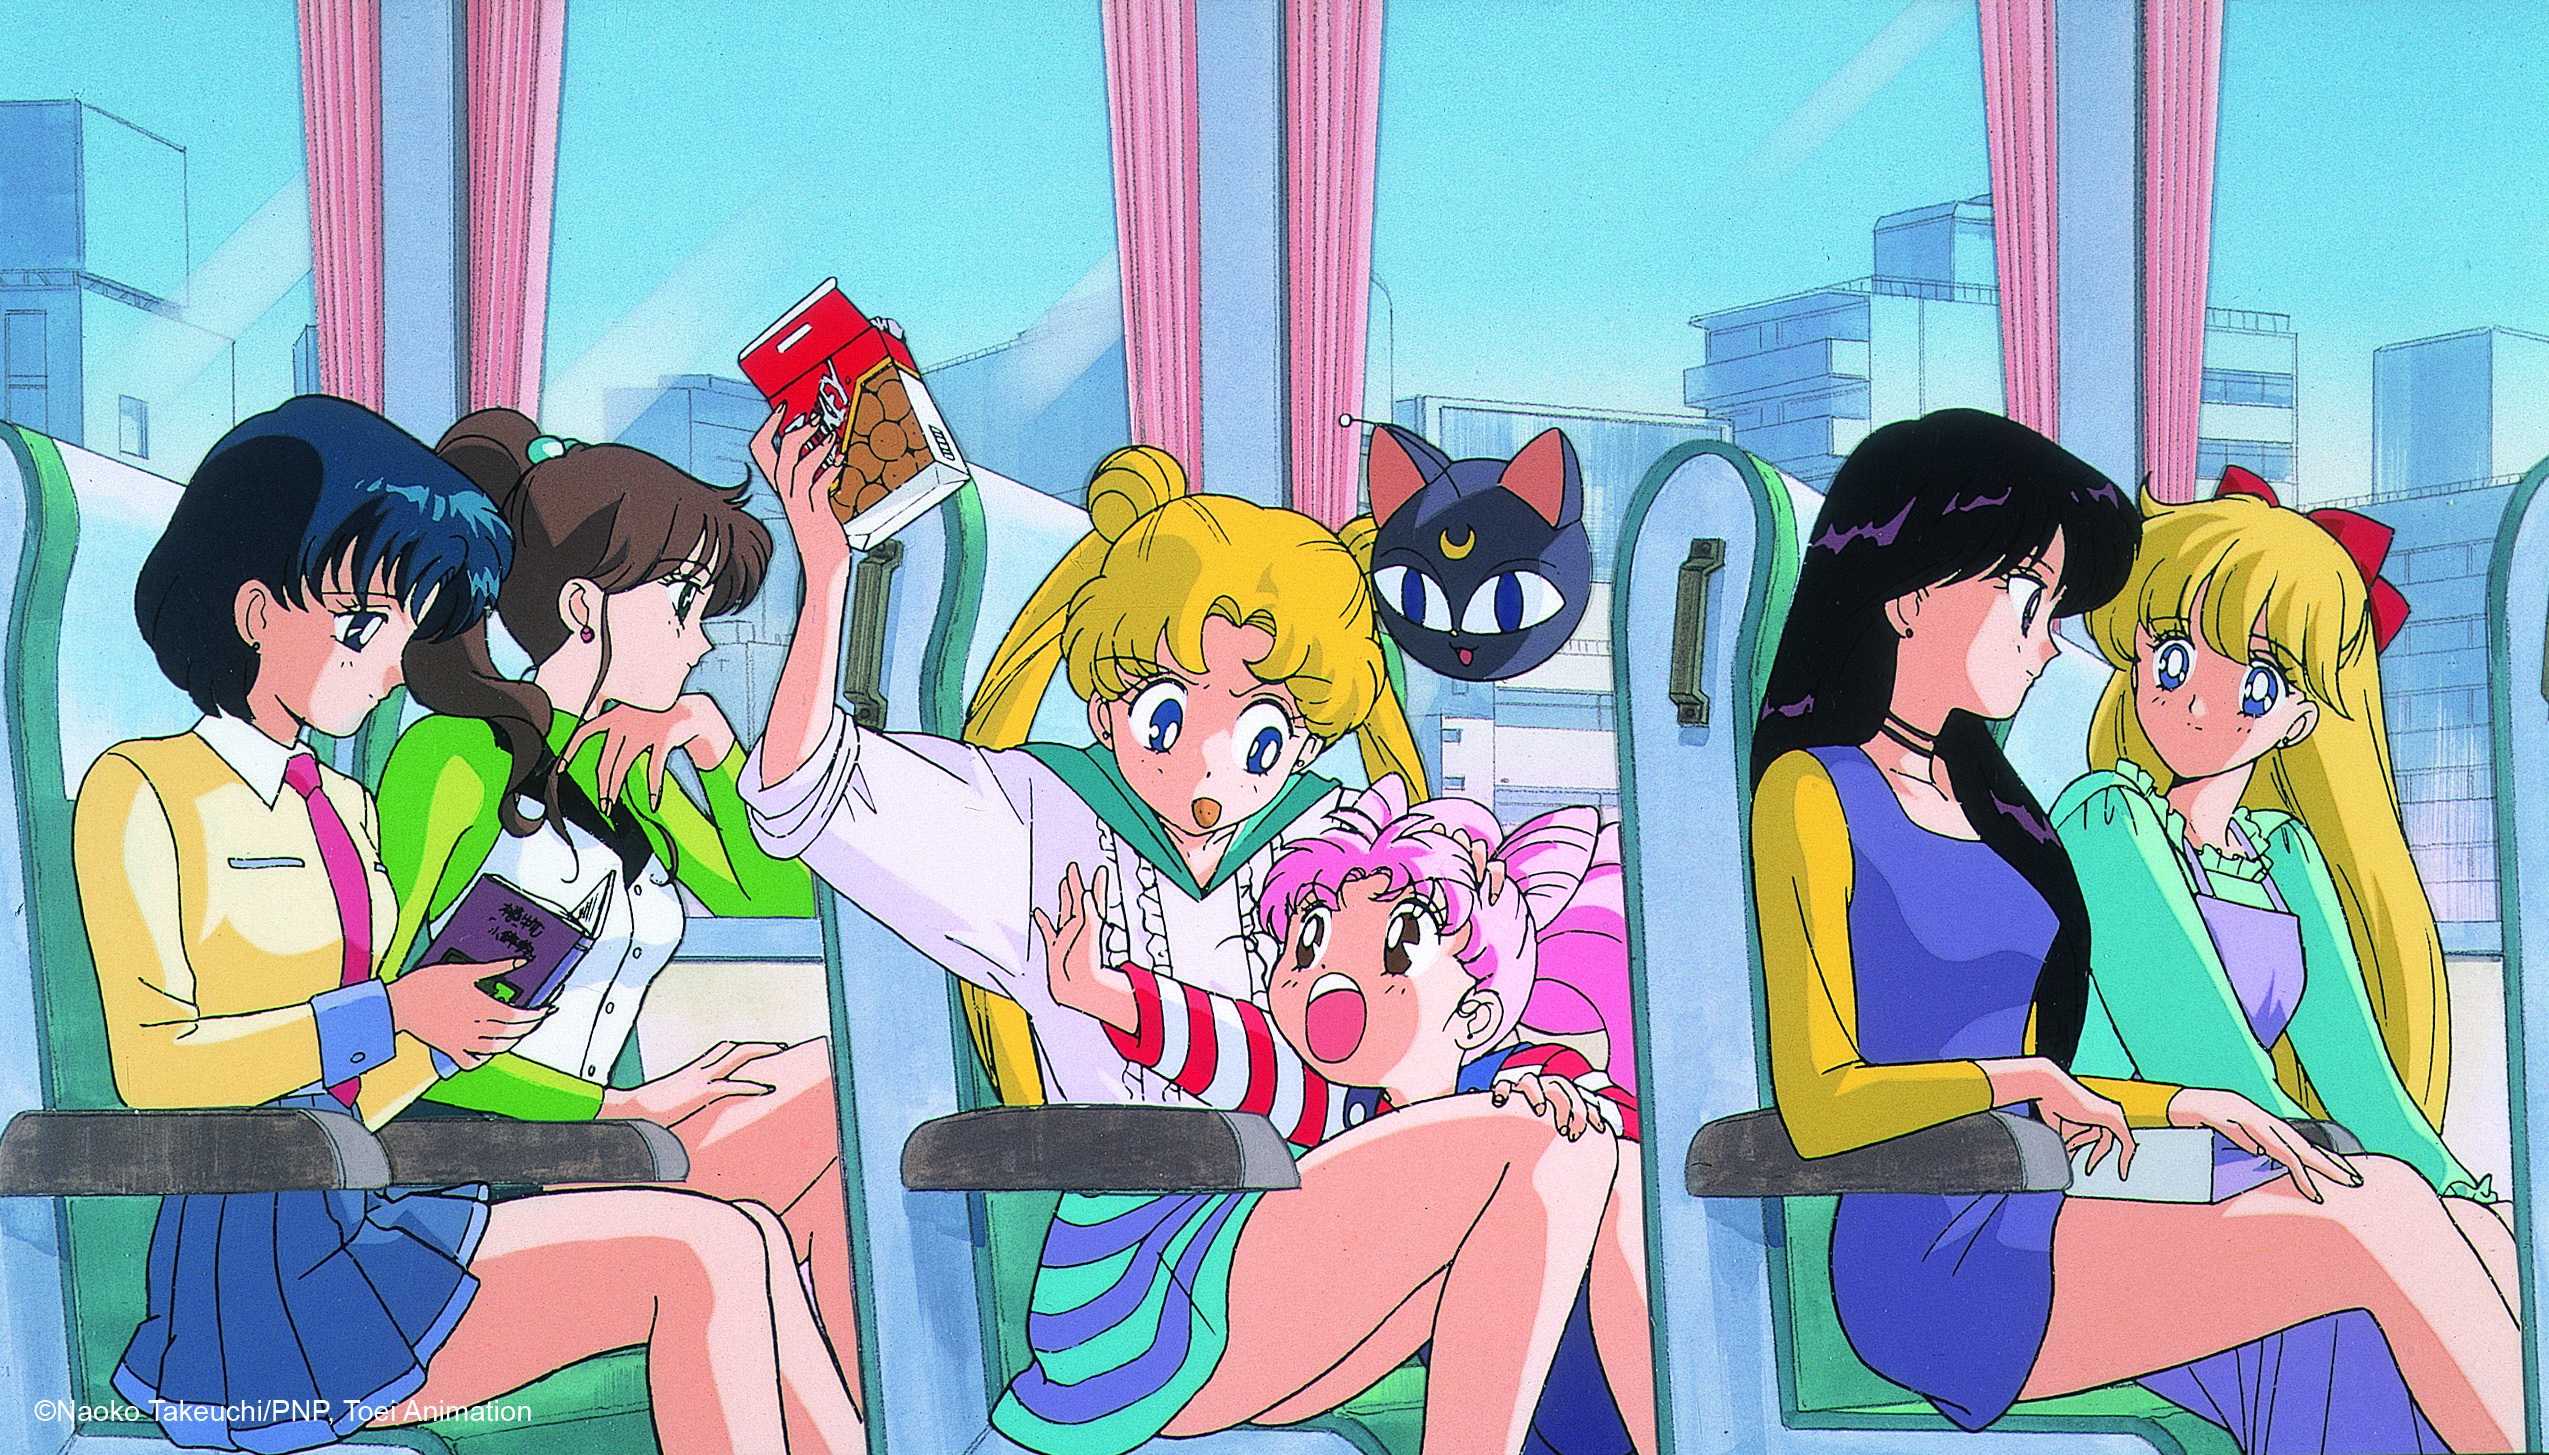 Letícia⭐Cosmos¹² on X: Rumor ou real? Sailor Moon Crystal começou a  aparecer no catálogo da Netflix Brasil! Ainda não há anúncio oficial ou  notícias sobre dublagem, mas o mesmo aconteceu alguns meses